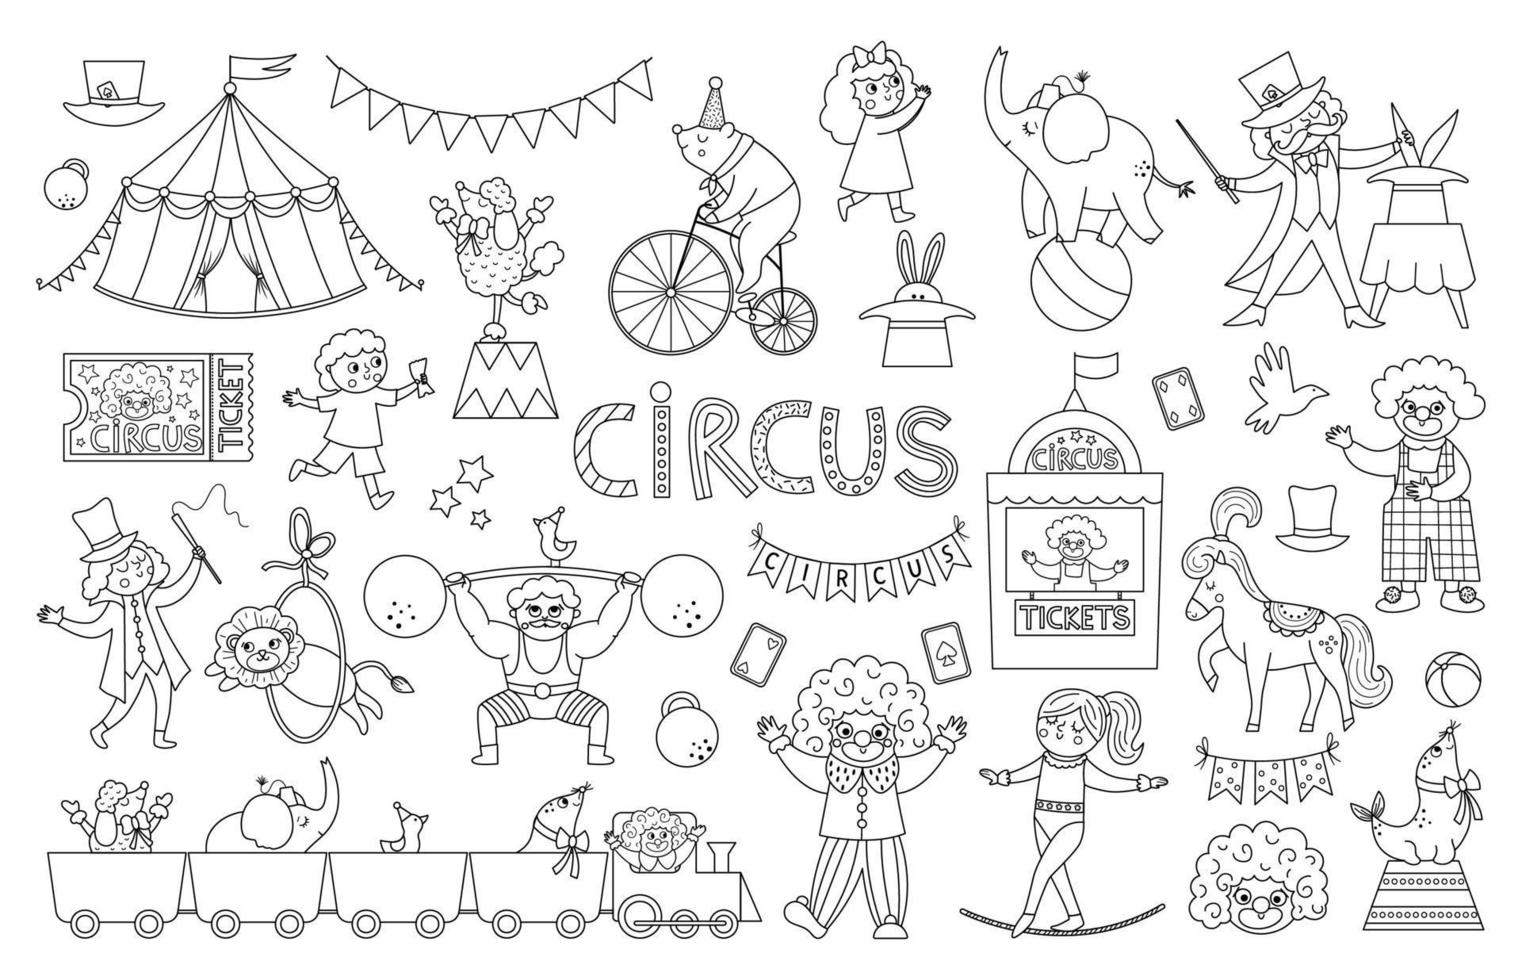 großes Schwarz-Weiß-Vektor-Zirkus-Set. Straßenshow-Tiere, Zelt, Künstlersammlung. Vergnügungsurlaub Linie Icons Pack. Bär auf dem Fahrrad, Clown, Turner, Sportler, Zauberer zum Ausmalen vektor